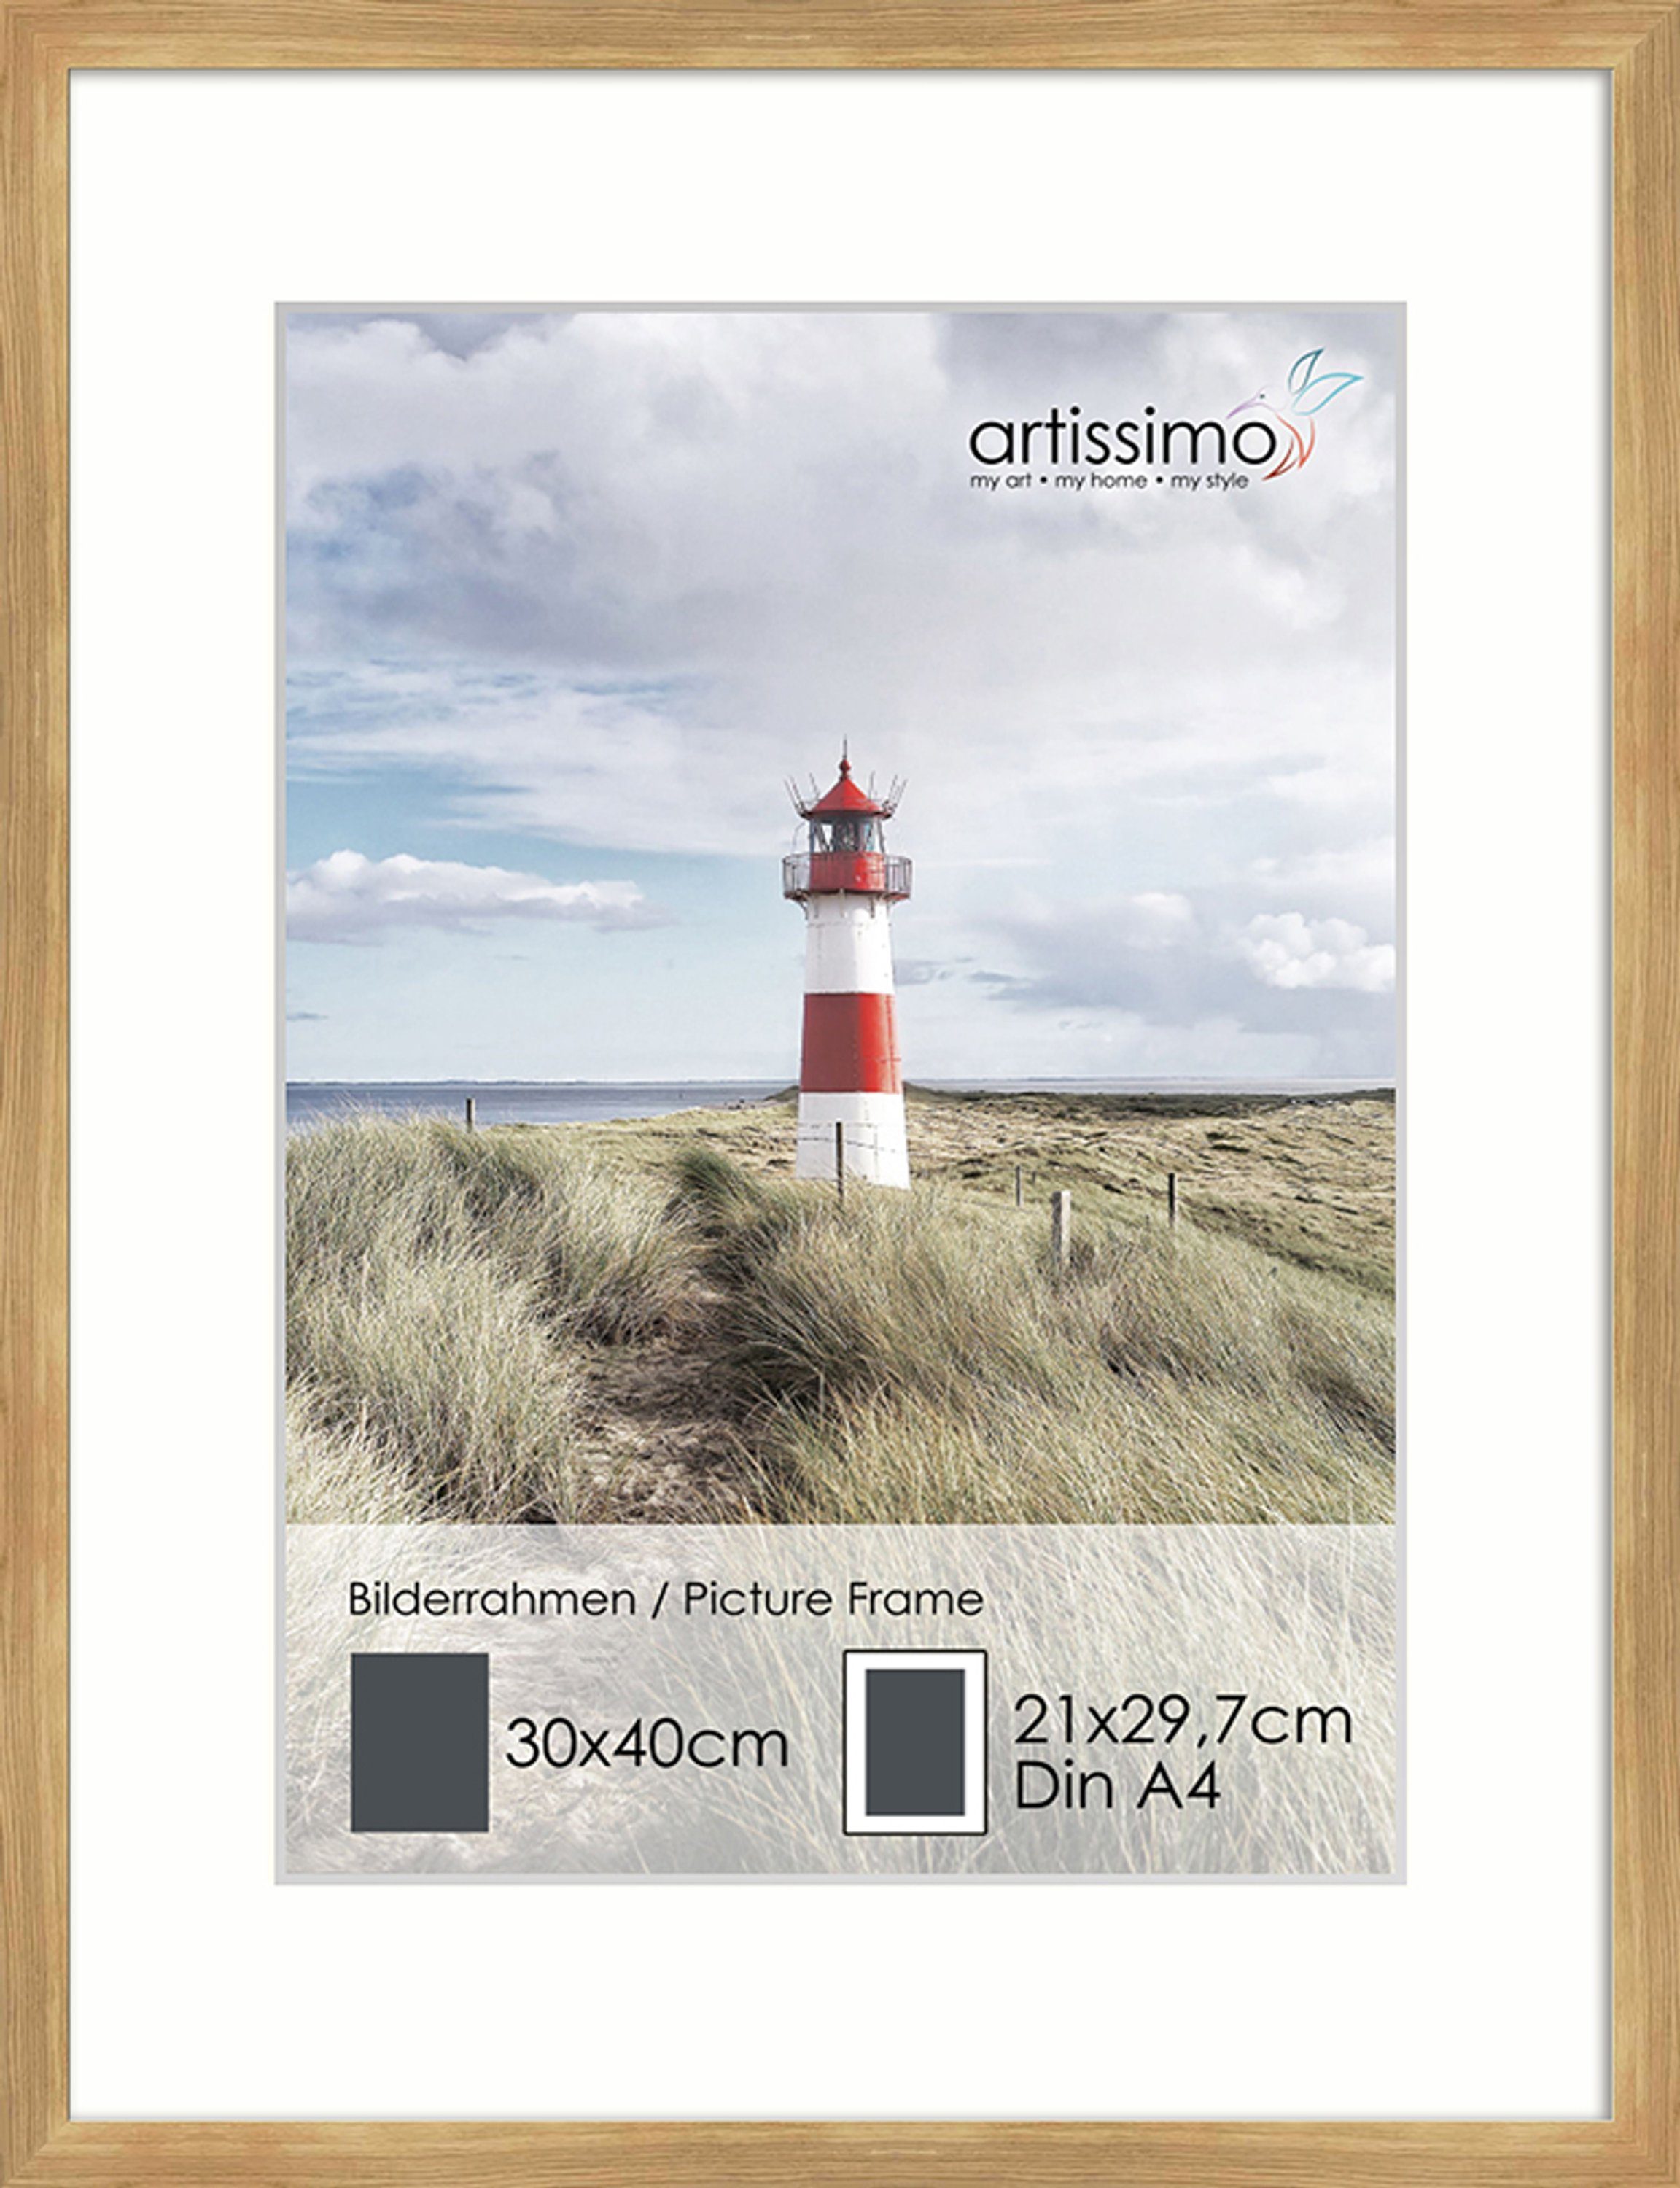 DinA4 Bilder-Rahmen 30x40cm Passepartout artissimo für Bilderleiste Poster Eiche Holz inkl.